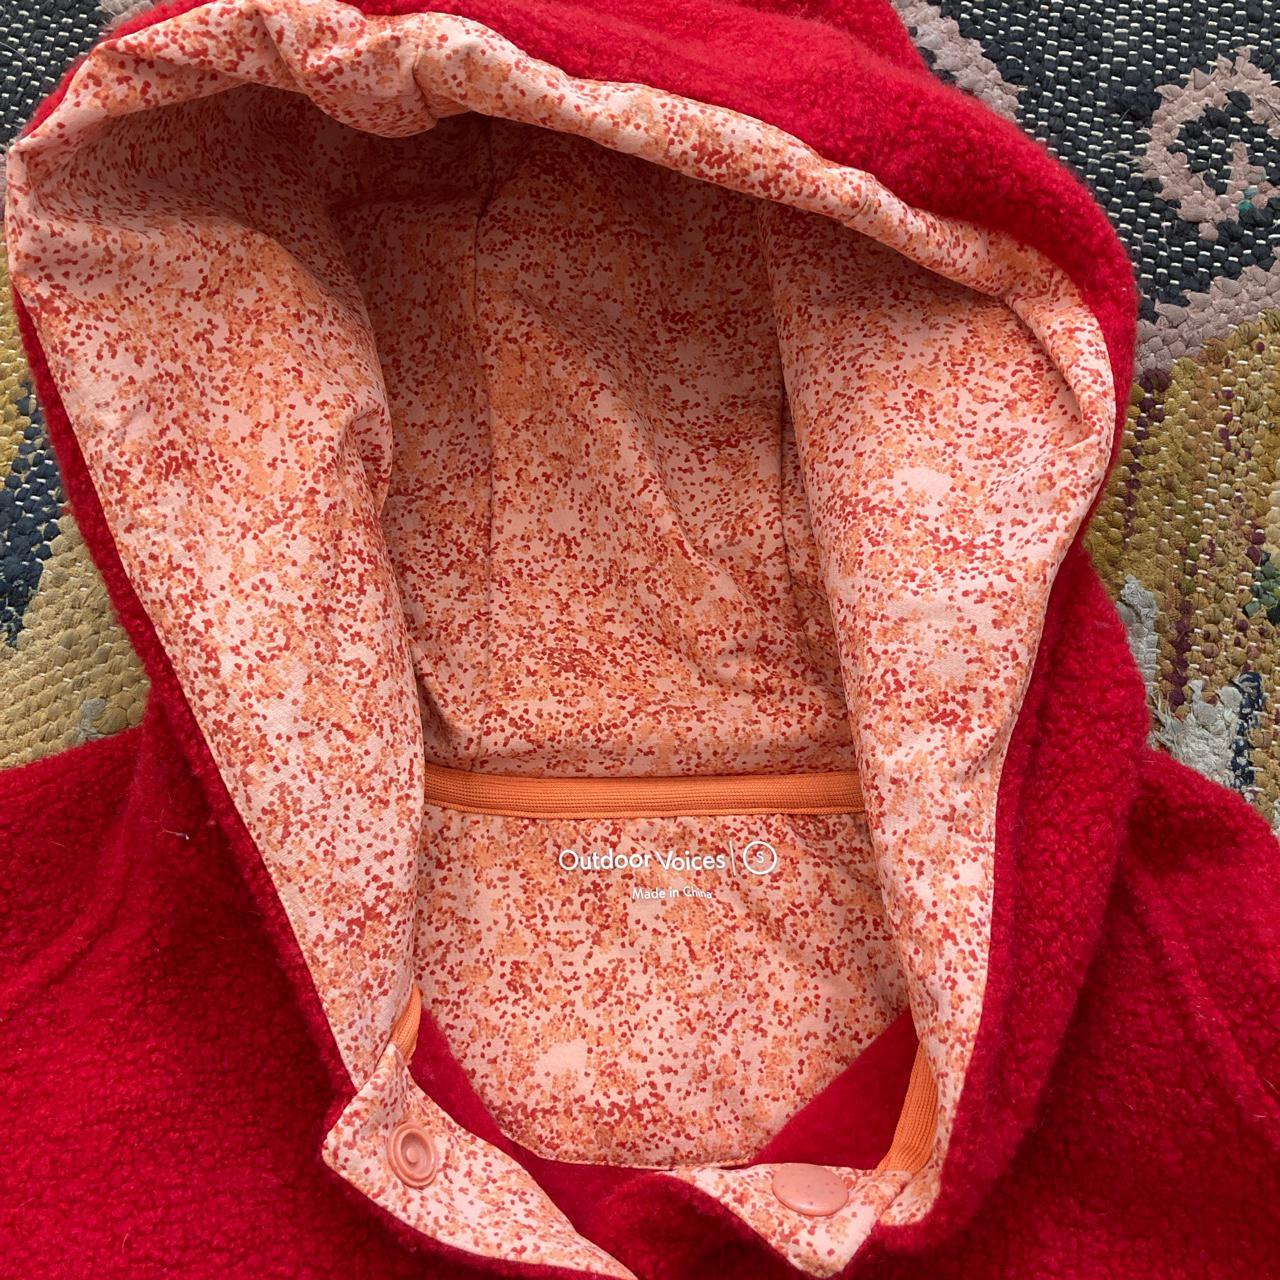 Outdoor Voices Megafleece hooded pullover in goji - Depop